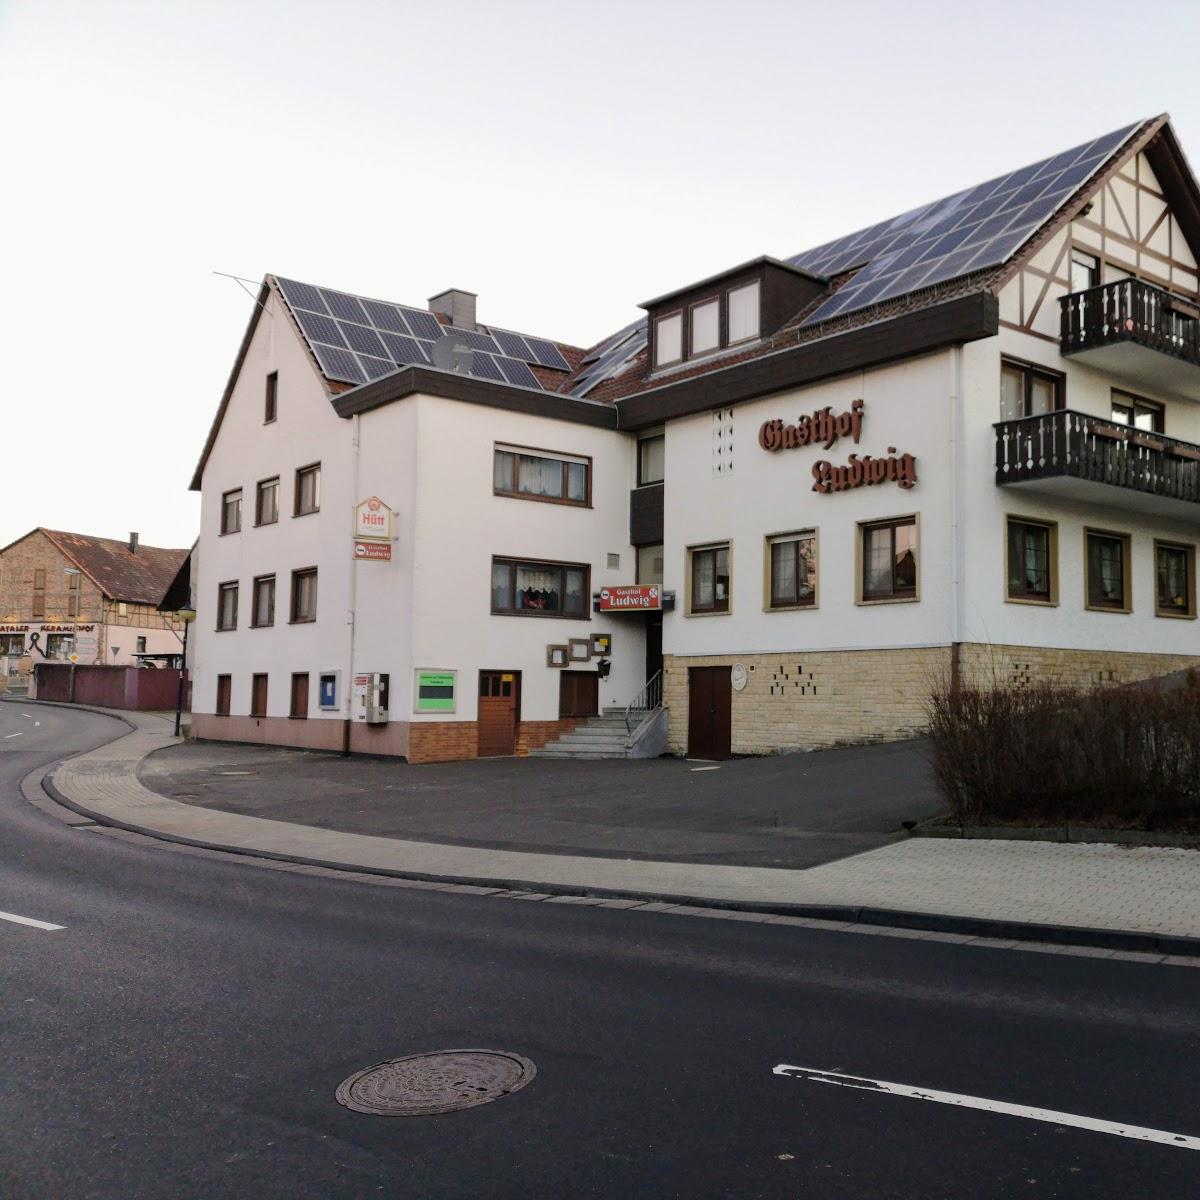 Restaurant "Gasthof Ludwig" in Baunatal